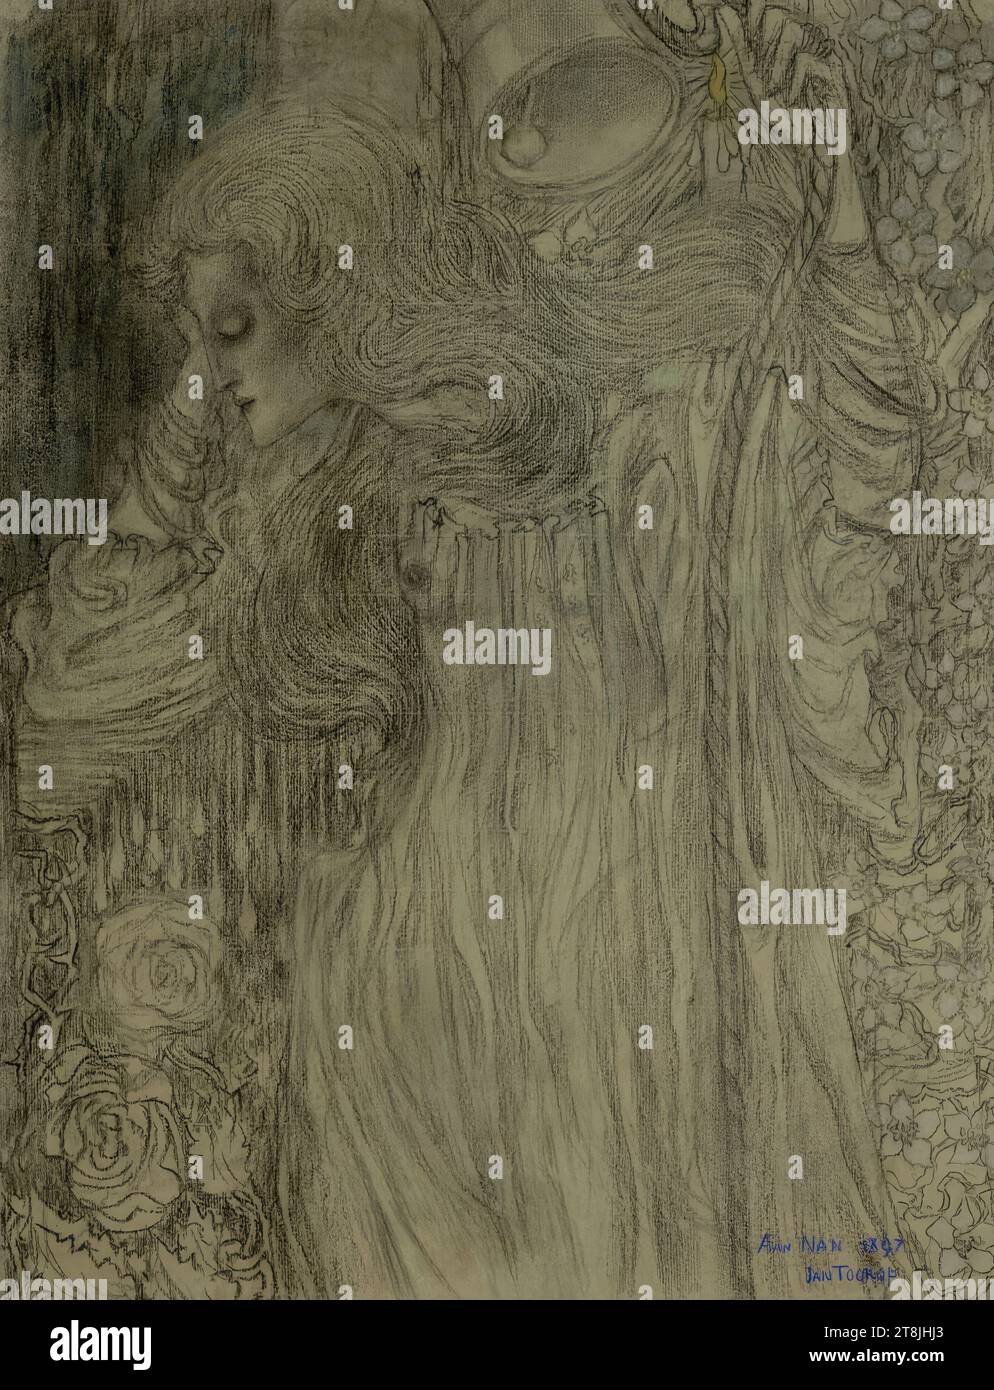 Le rêveur, Jan Toorop, Poerworedjo, Java, 1858 - 1928 la Haye, 1897, dessin, craies noires et colorées sur papier vert, 61,4 x 47,5 cm Banque D'Images